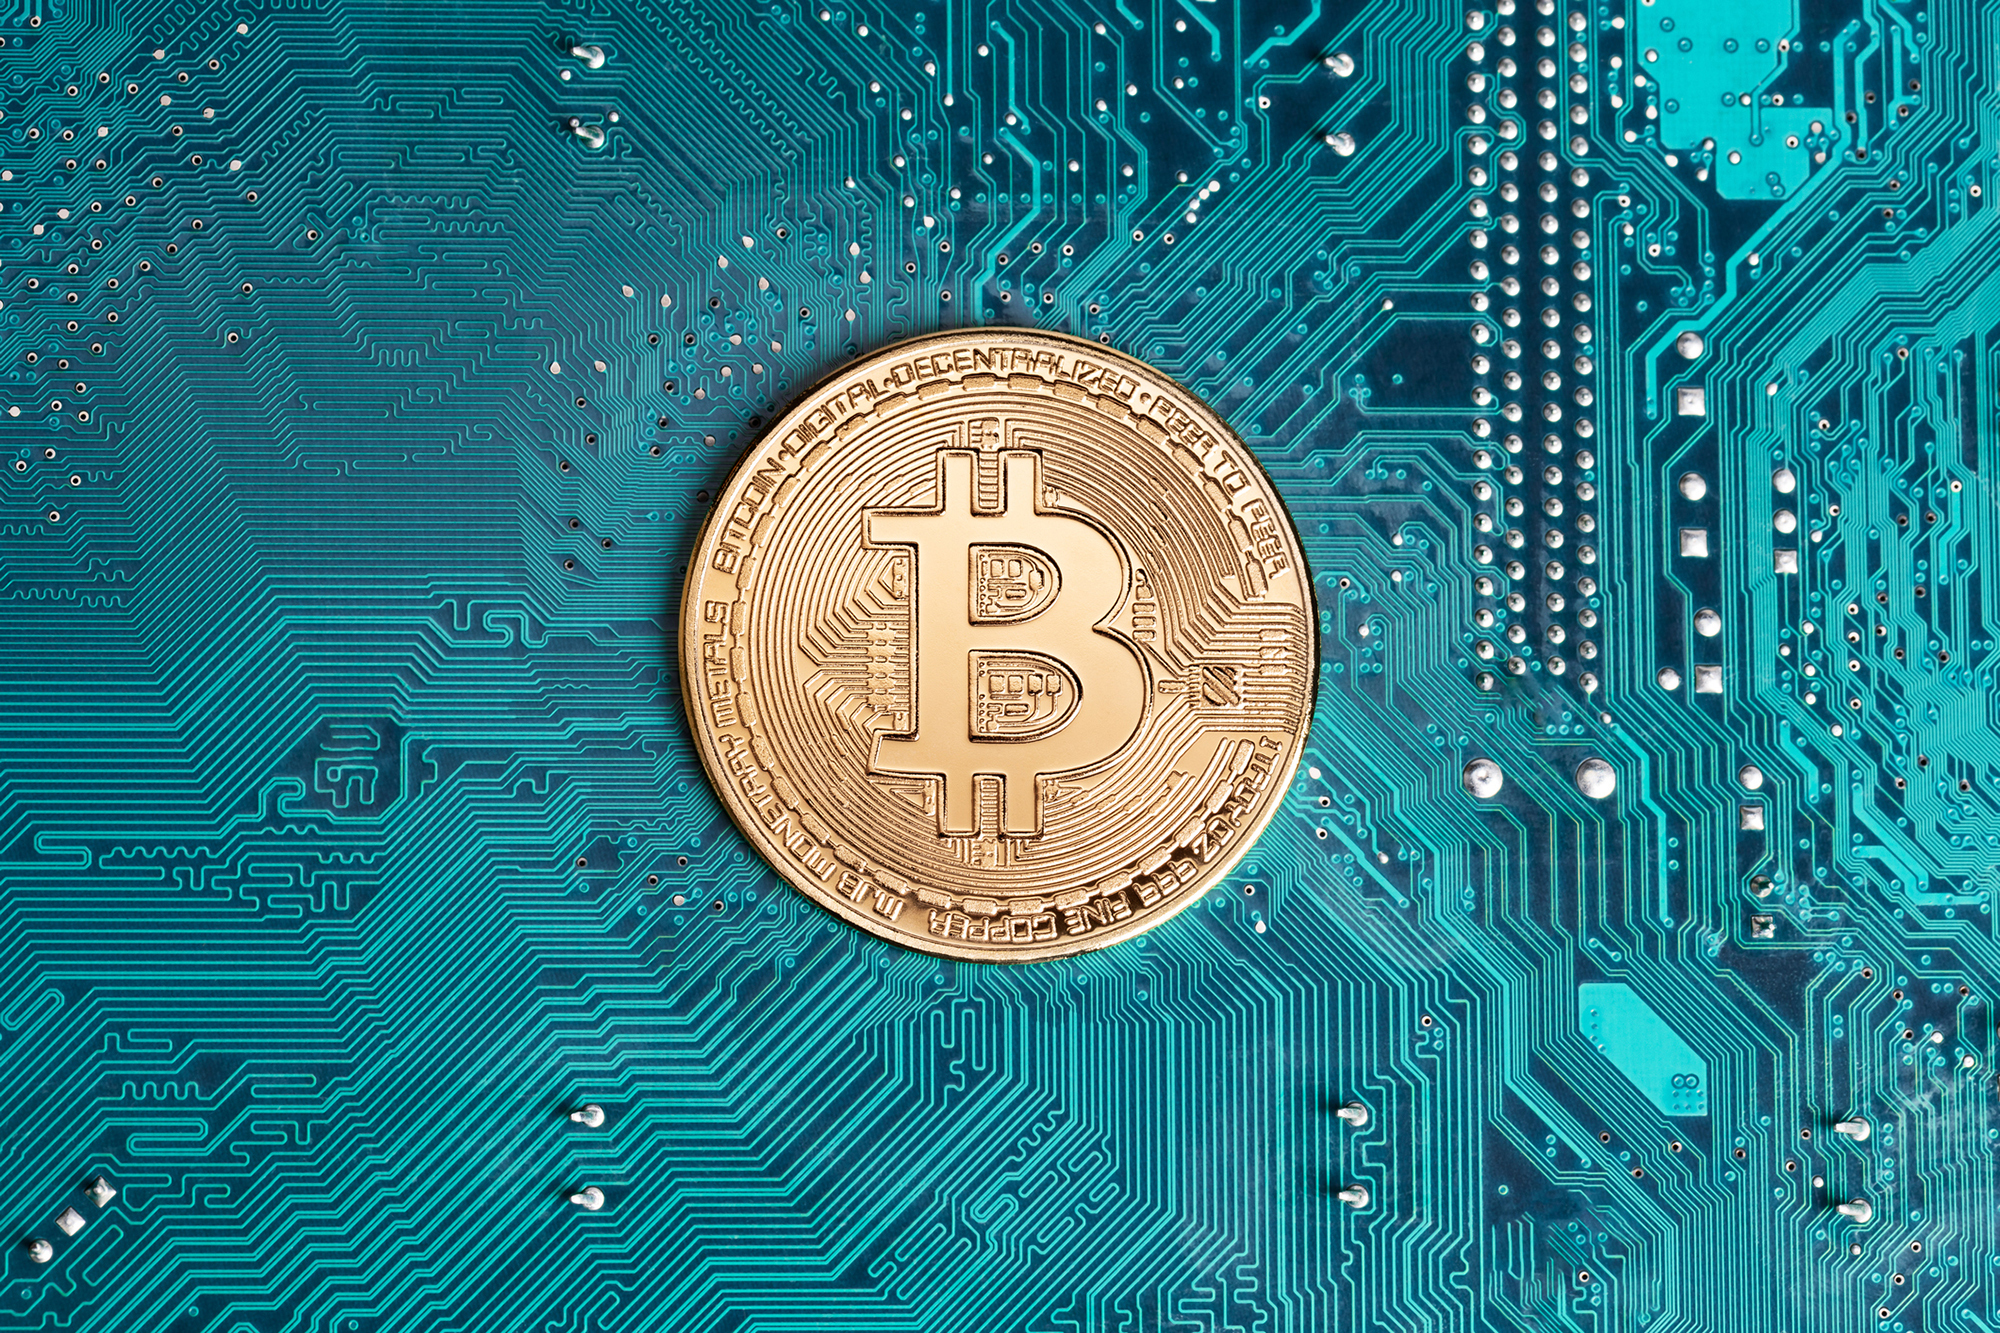 Golden bitcoin replica on computer circuit board